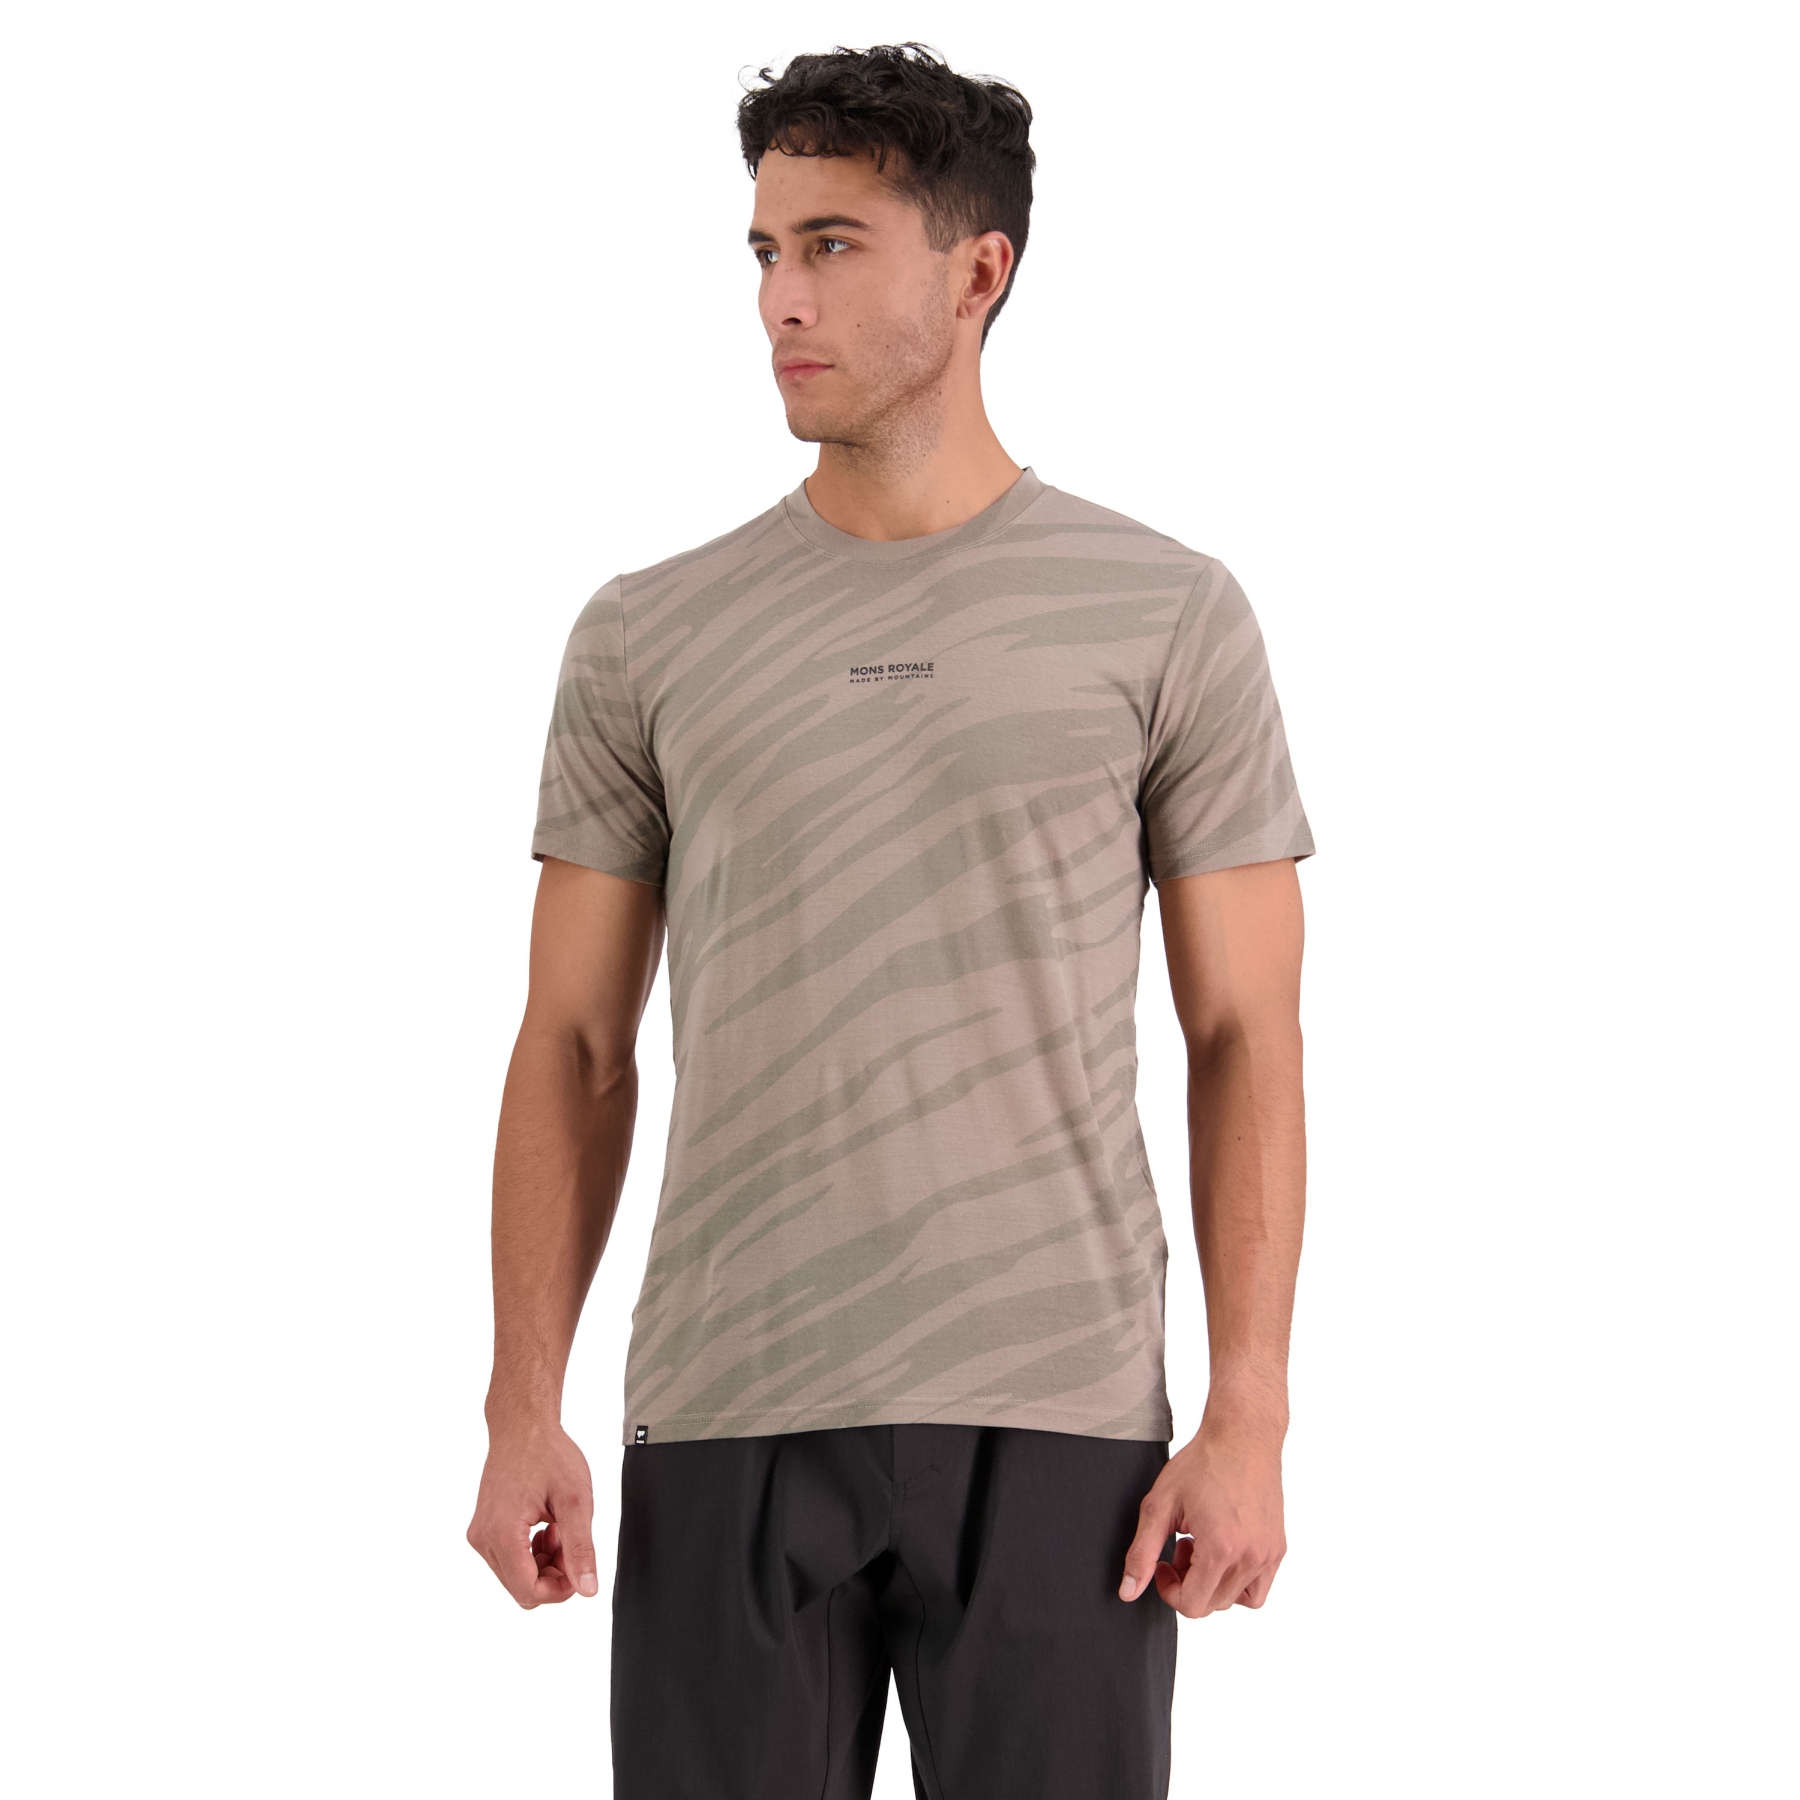 Produktbild von Mons Royale Icon Merino Air-Con T-Shirt Herren - undercover camo